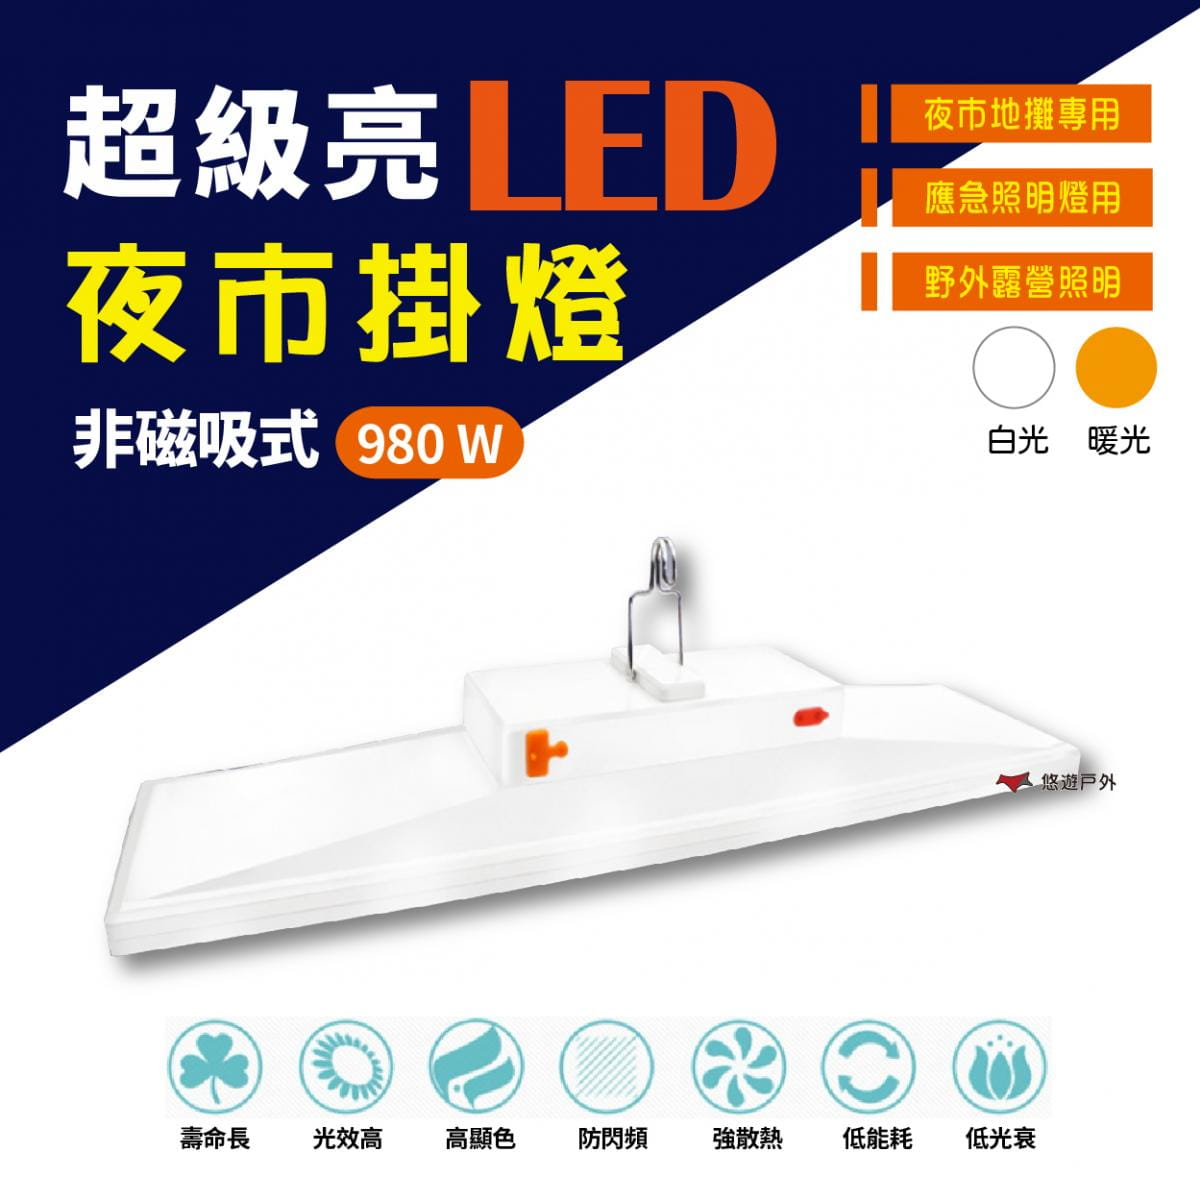 LED 磁吸 多功能節能燈_980W (悠遊戶外) 0